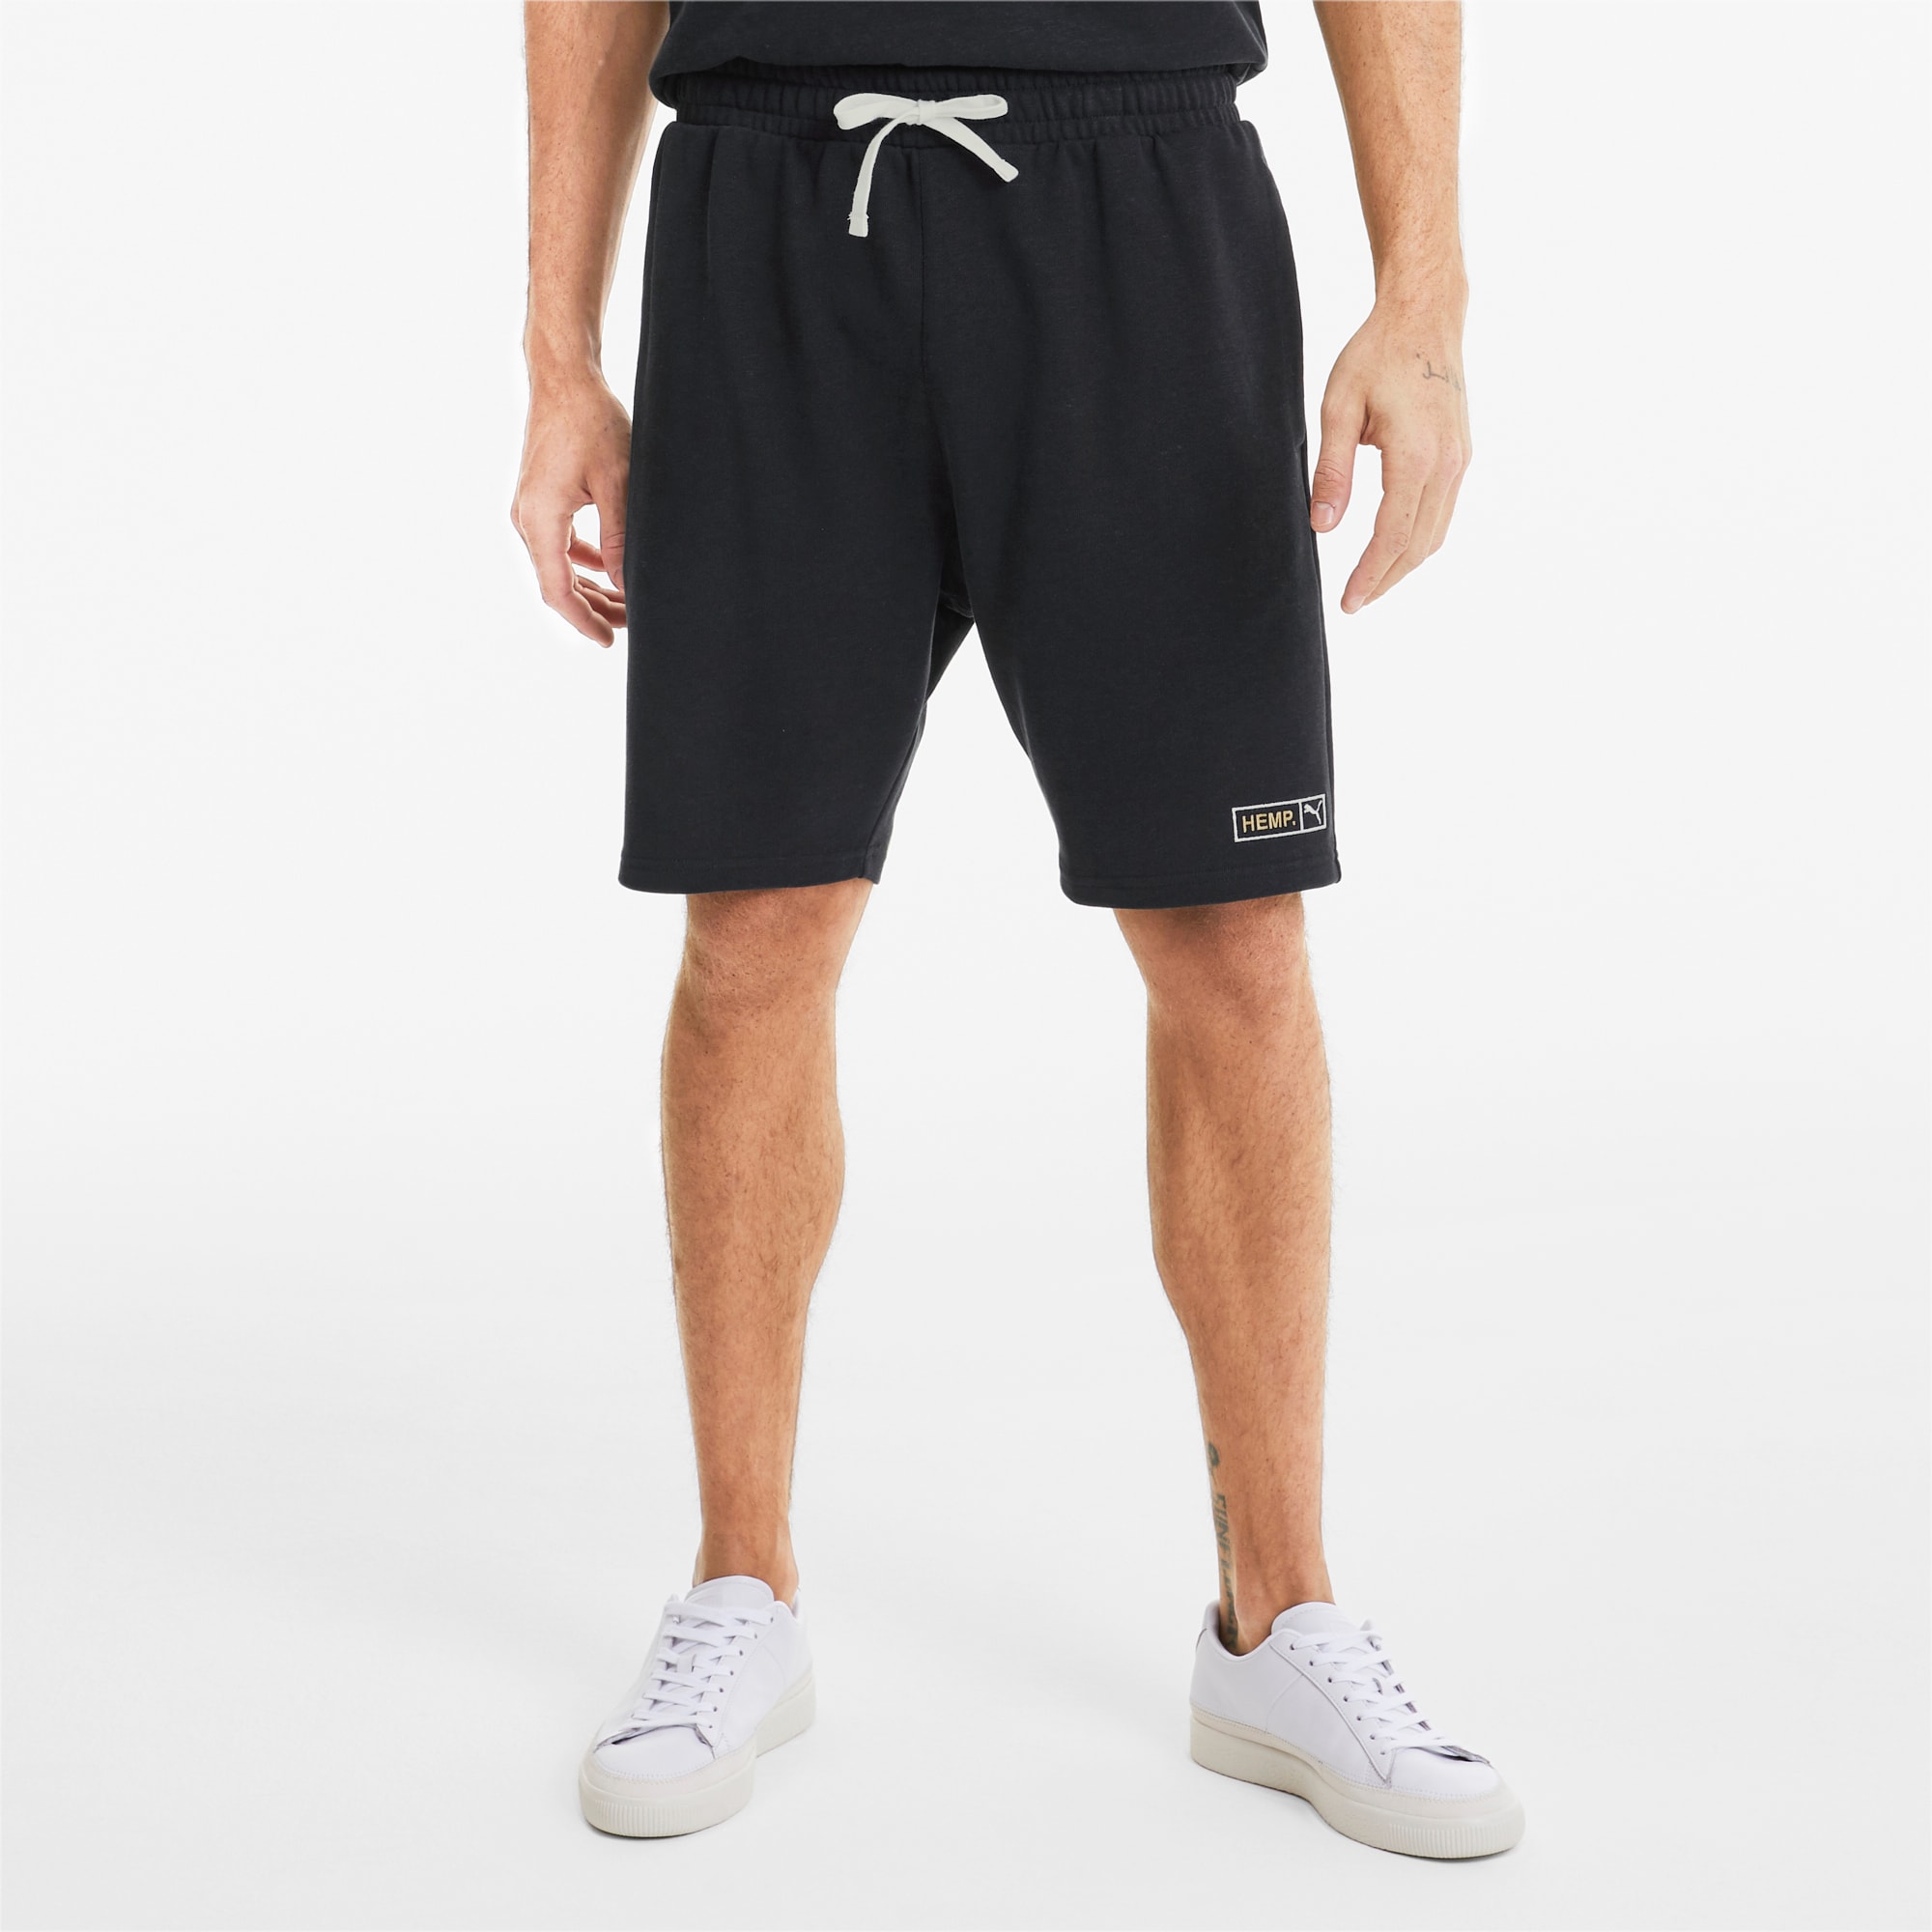 puma shorts